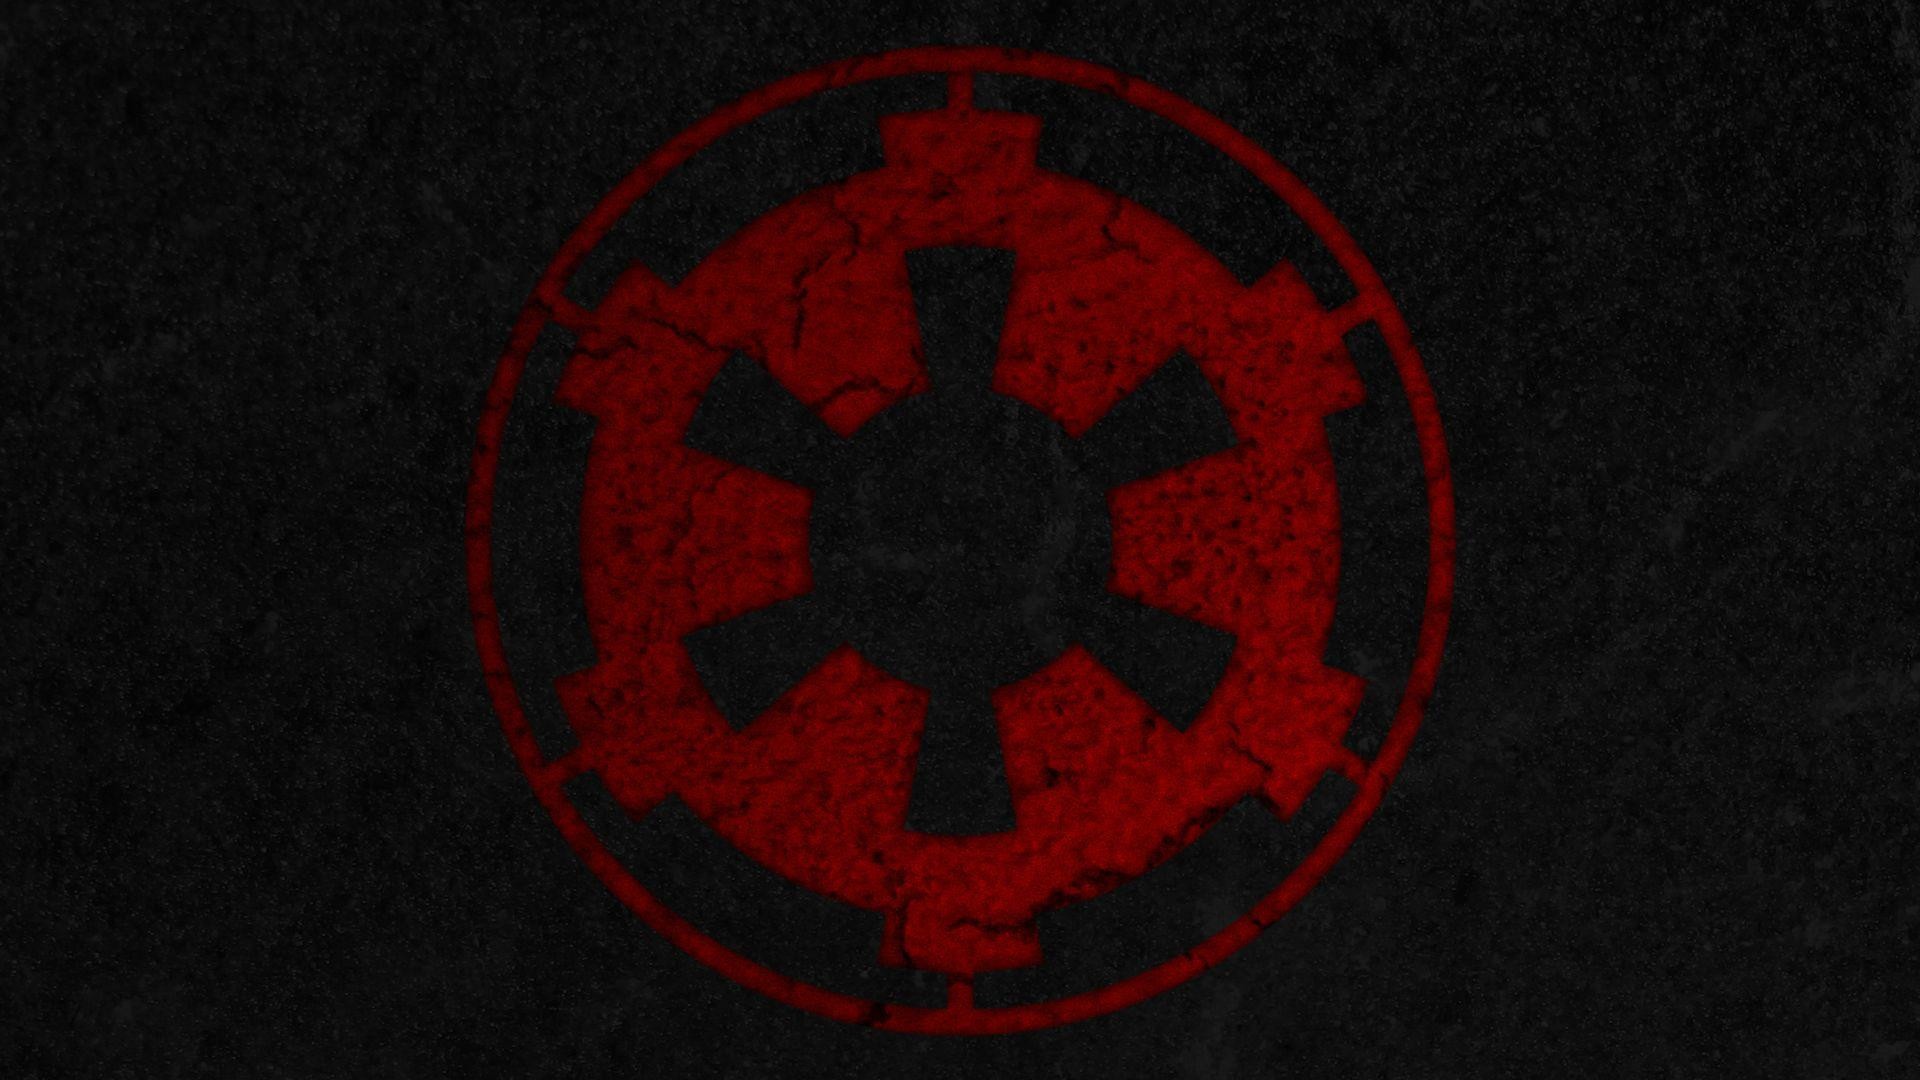 48+] Star Wars Empire Logo Wallpaper - WallpaperSafari